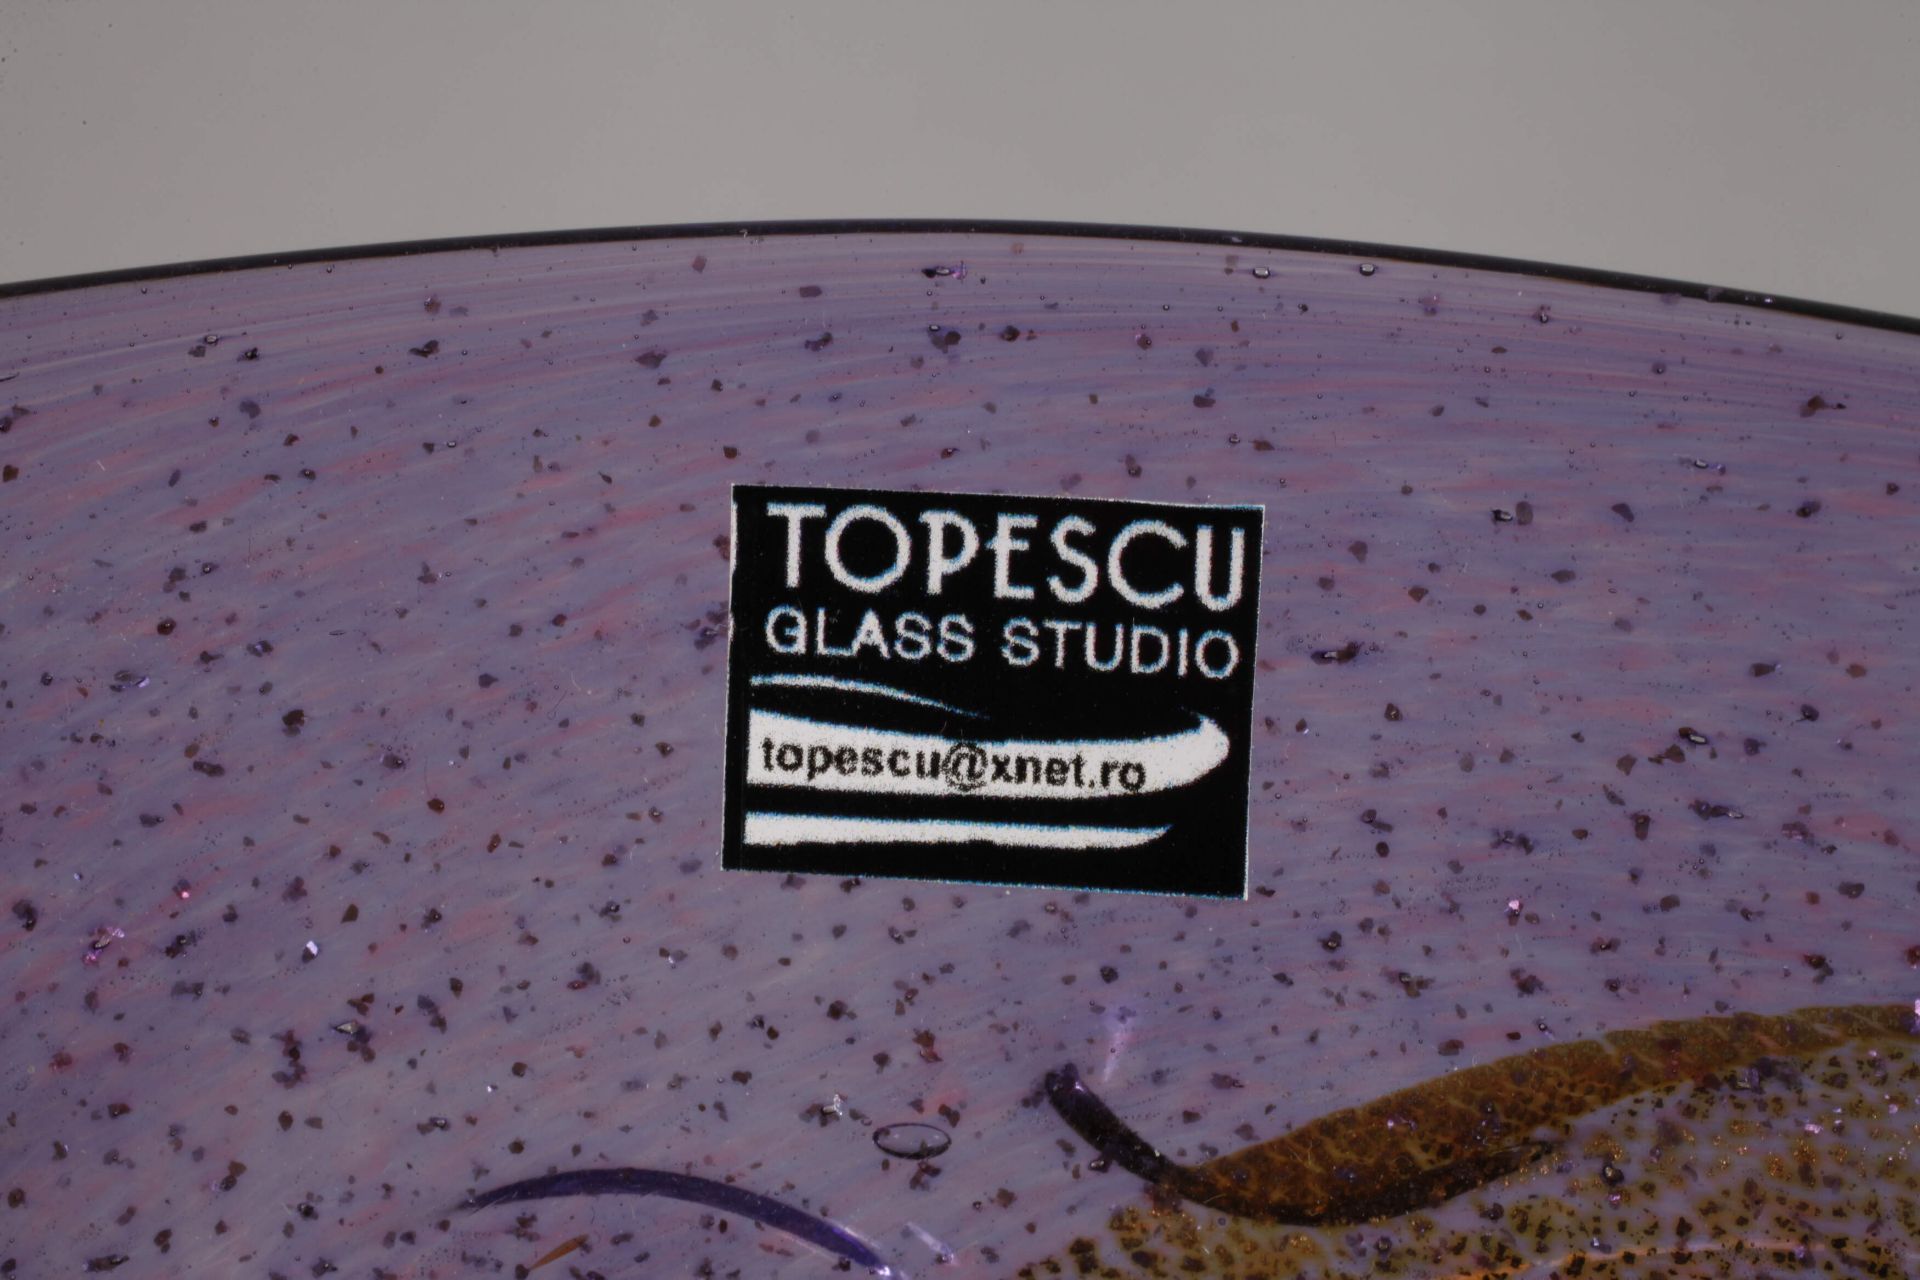 Mihai Topescu bowl studio glass - Image 4 of 5